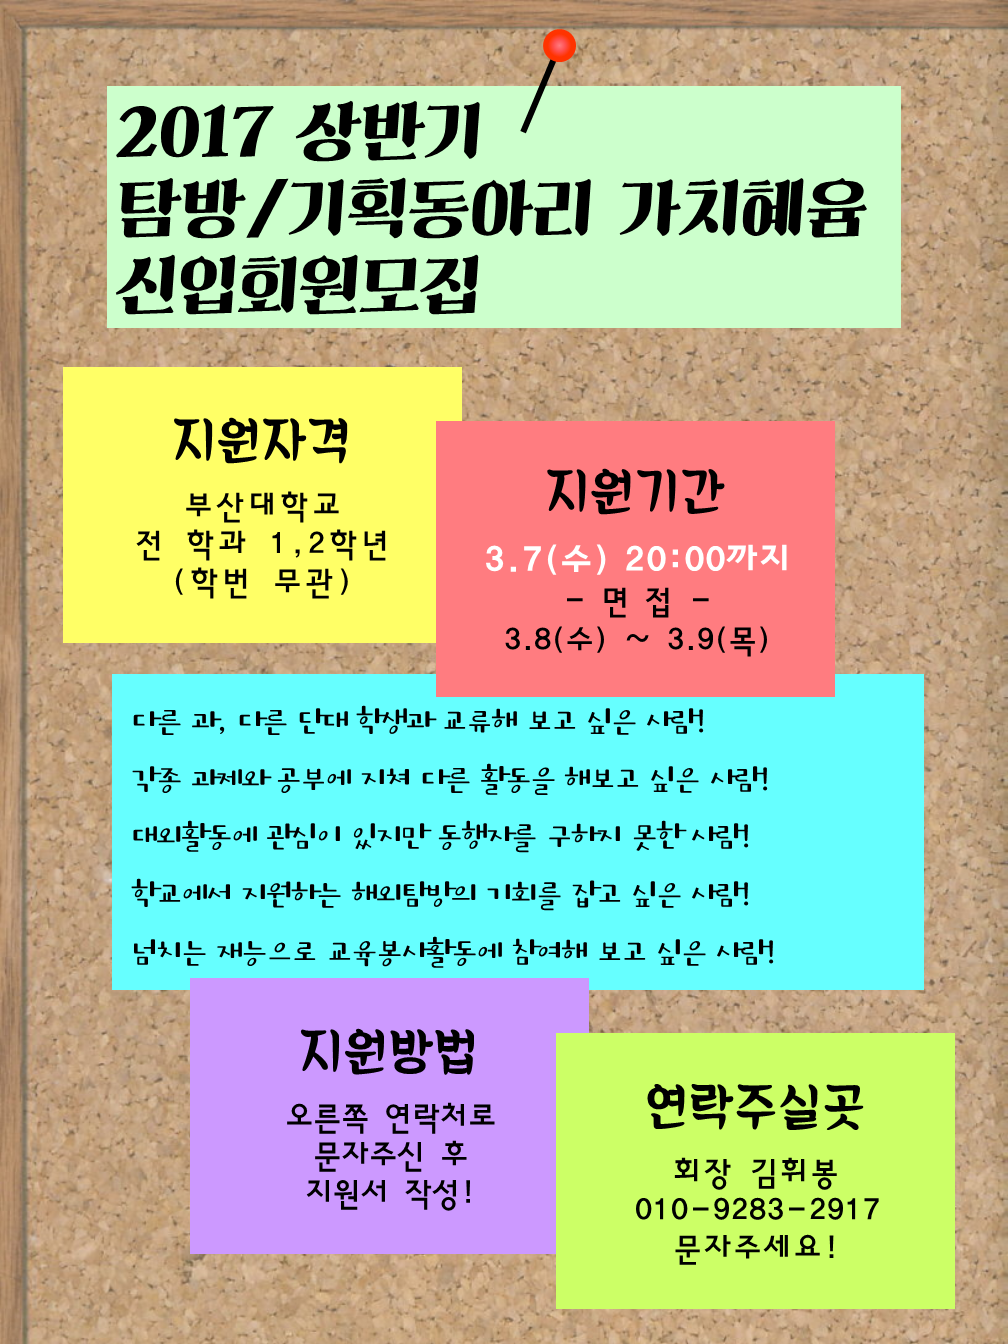 가치혜윰포스터.png : ★★부산대학교 탐방&기획동아리 가치혜윰에서 신입회원을 모집합니다!!★★